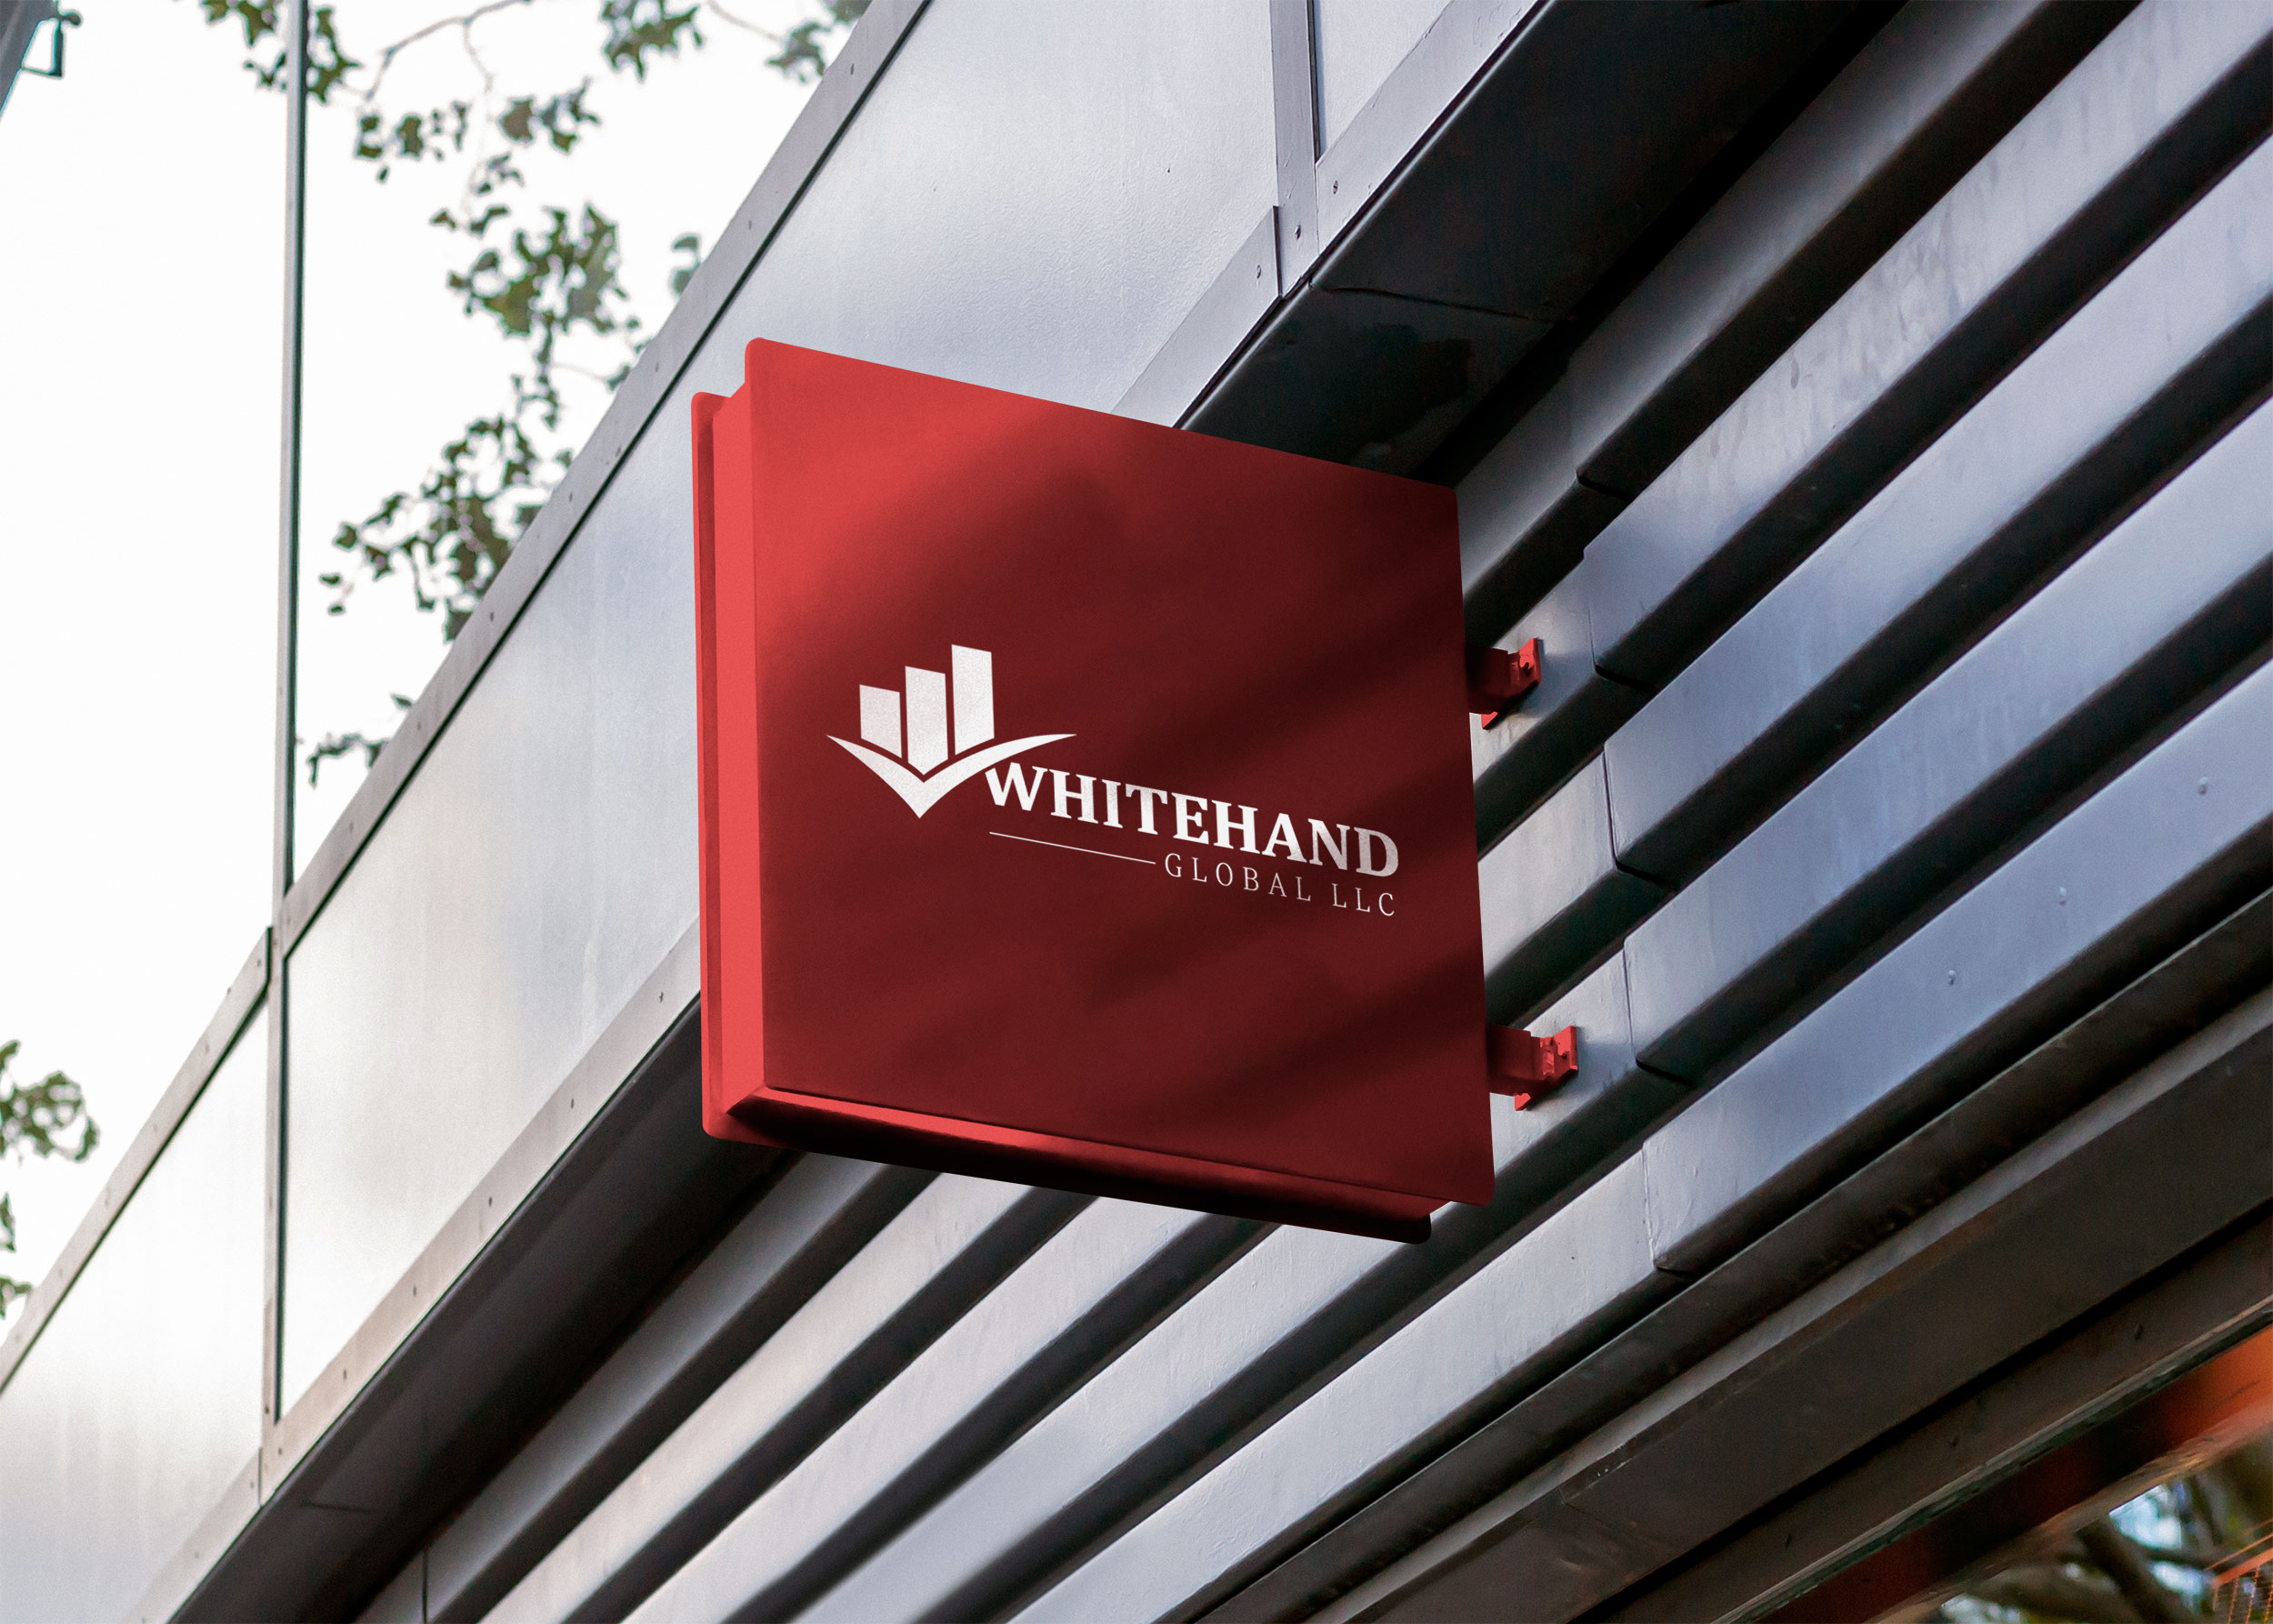 Whitehand Global LLC - 2